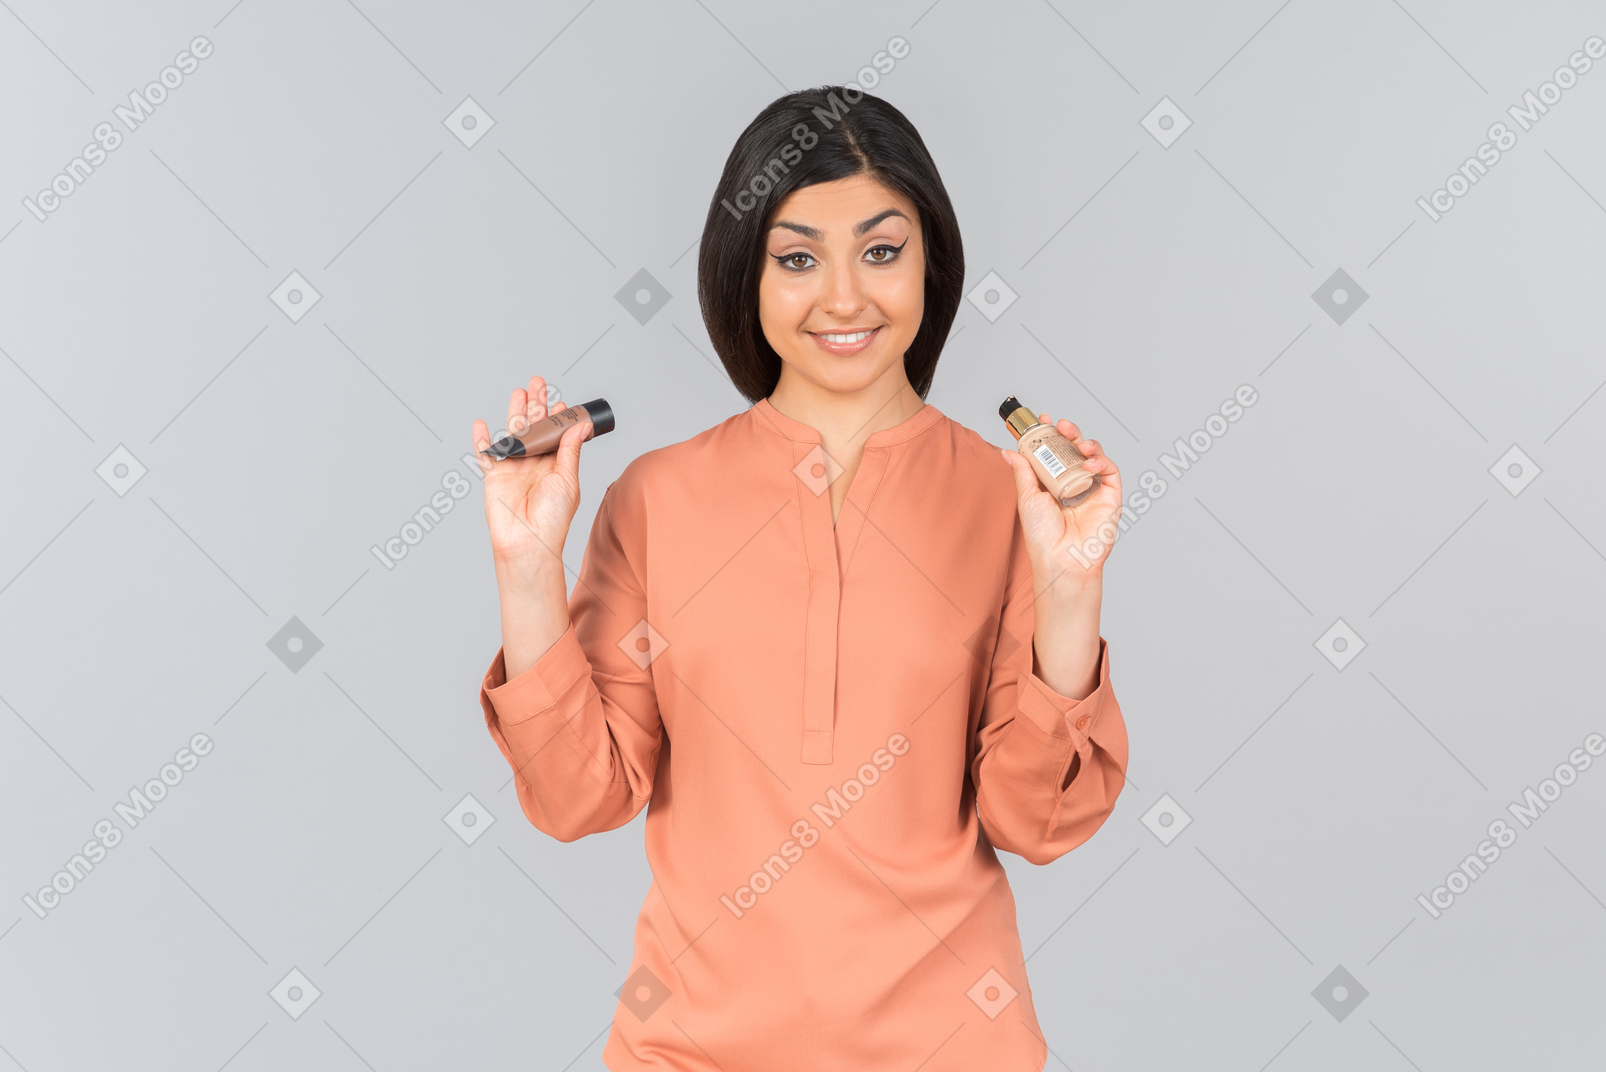 Femme indienne pointant sur les baumes pour les lèvres qu'elle tient